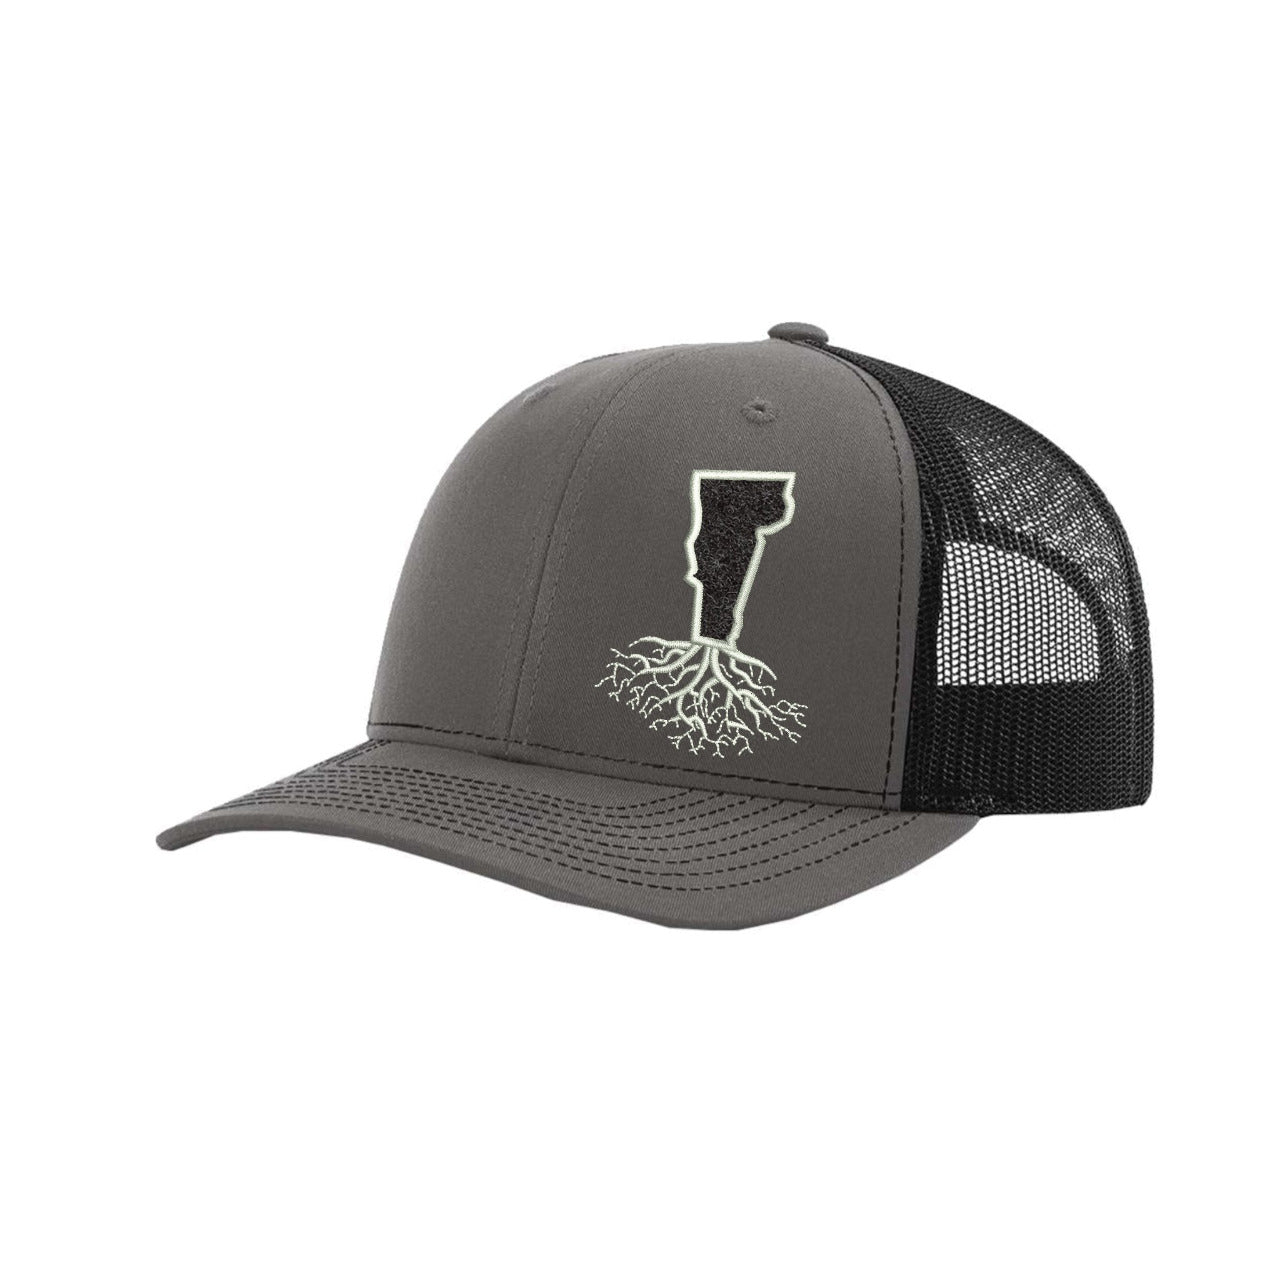 Vermont Hook & Loop Trucker Cap - Hats